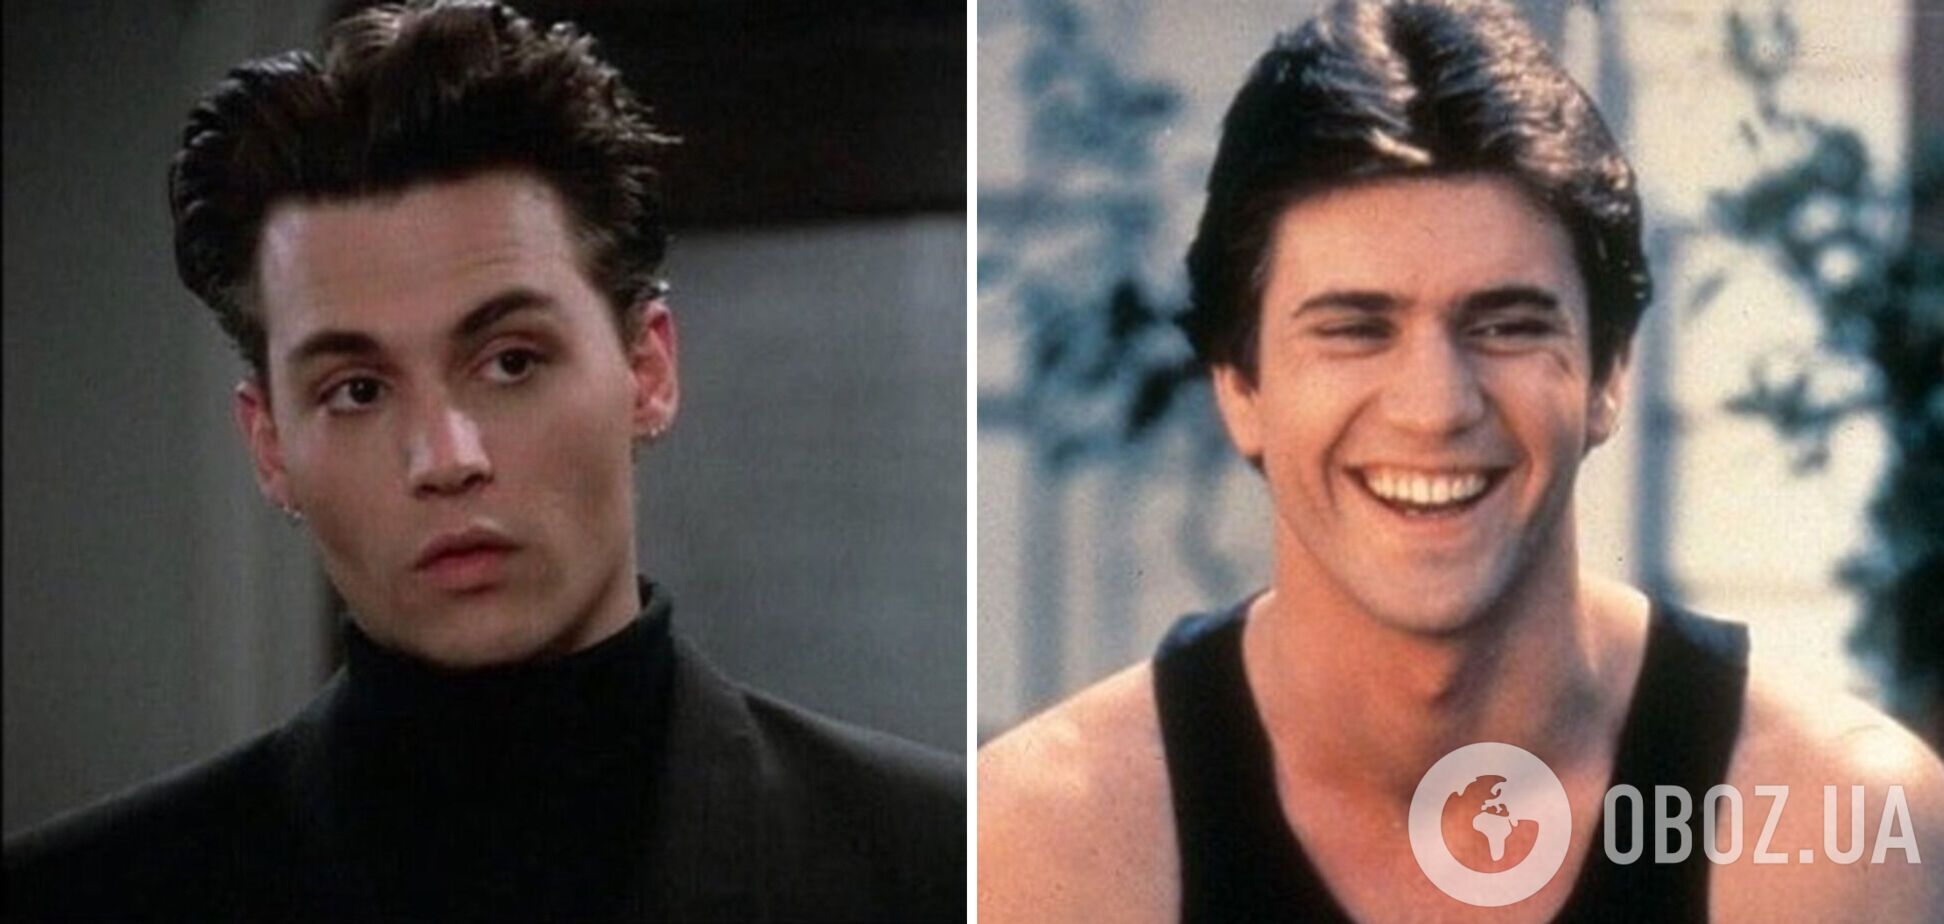 Возраст не жалеет никого! Как изменились самые красивые актеры 90-х, от которых сходили с ума фанатки. Фото тогда и сейчас